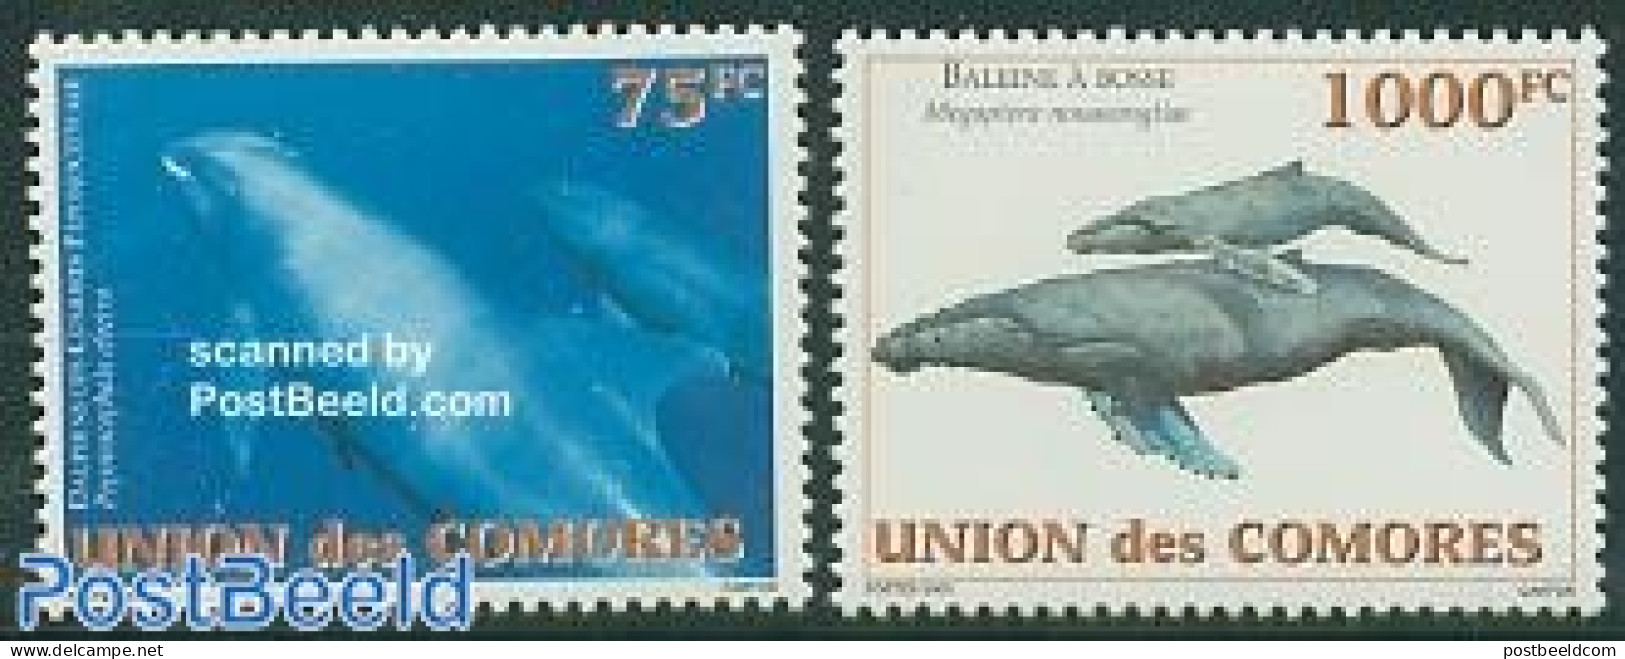 Comoros 2003 Whales & Dolphins 2v, Mint NH, Nature - Sea Mammals - Comoren (1975-...)